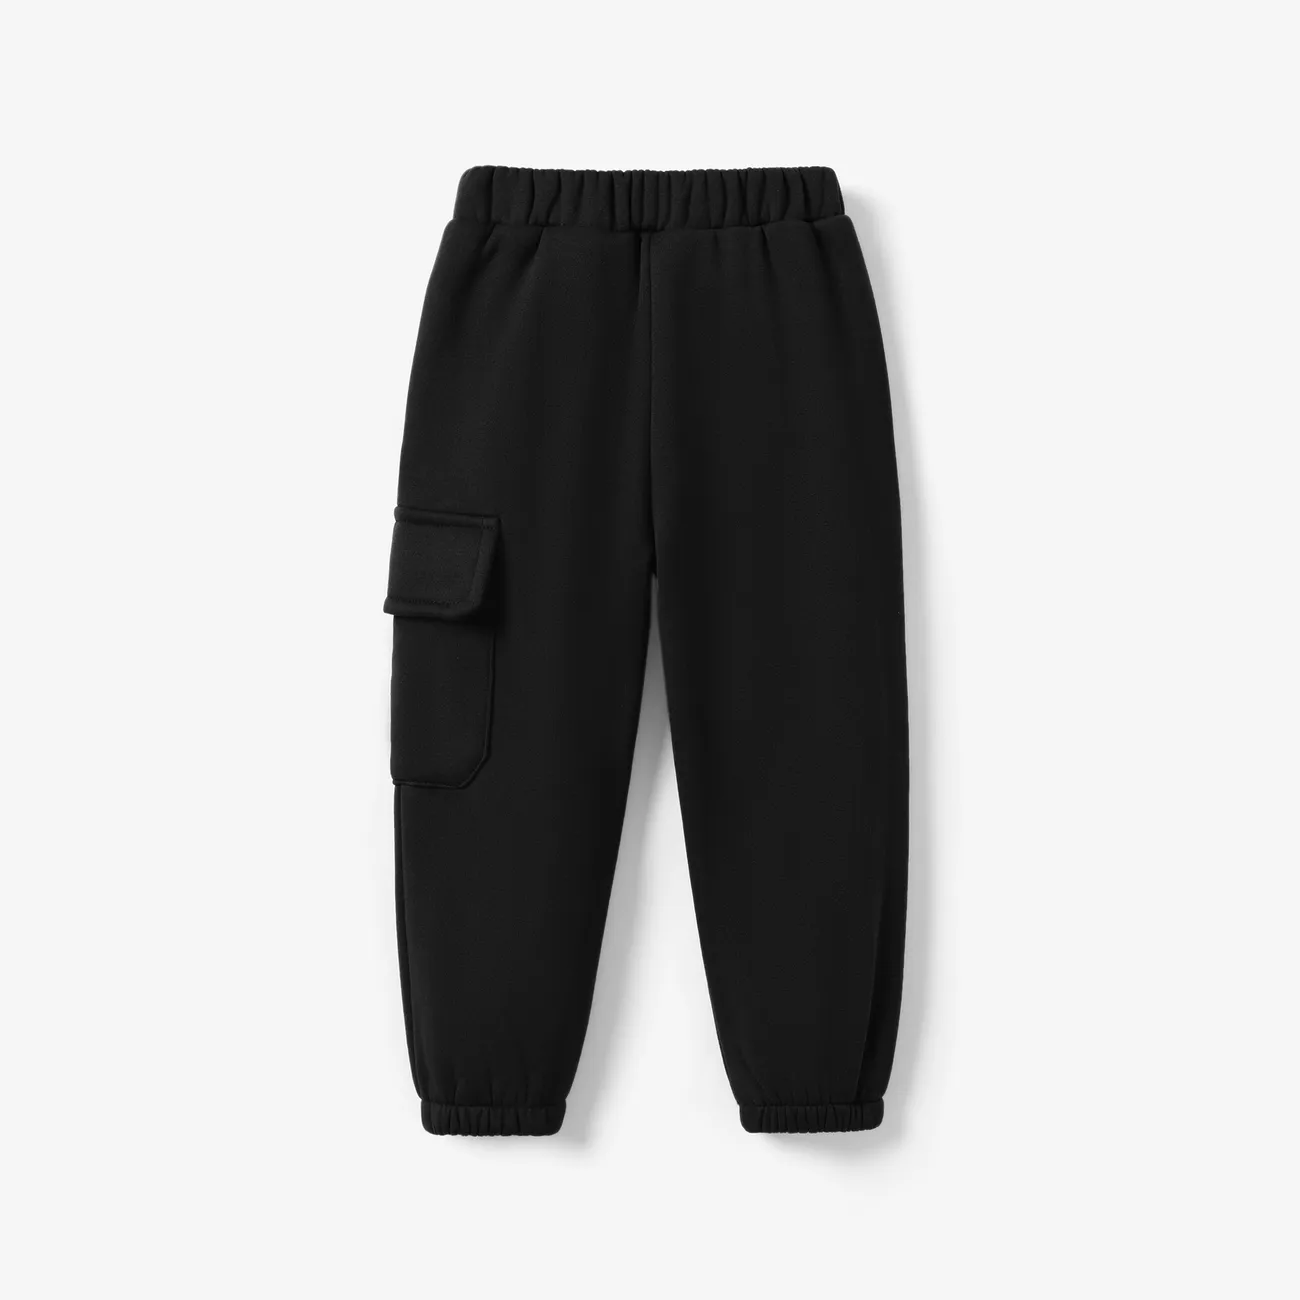 Pantalones casuales holgados para niño con bolsillo de parche - 1 pieza, mezcla de poliéster y spandex, color sólido Negro big image 1